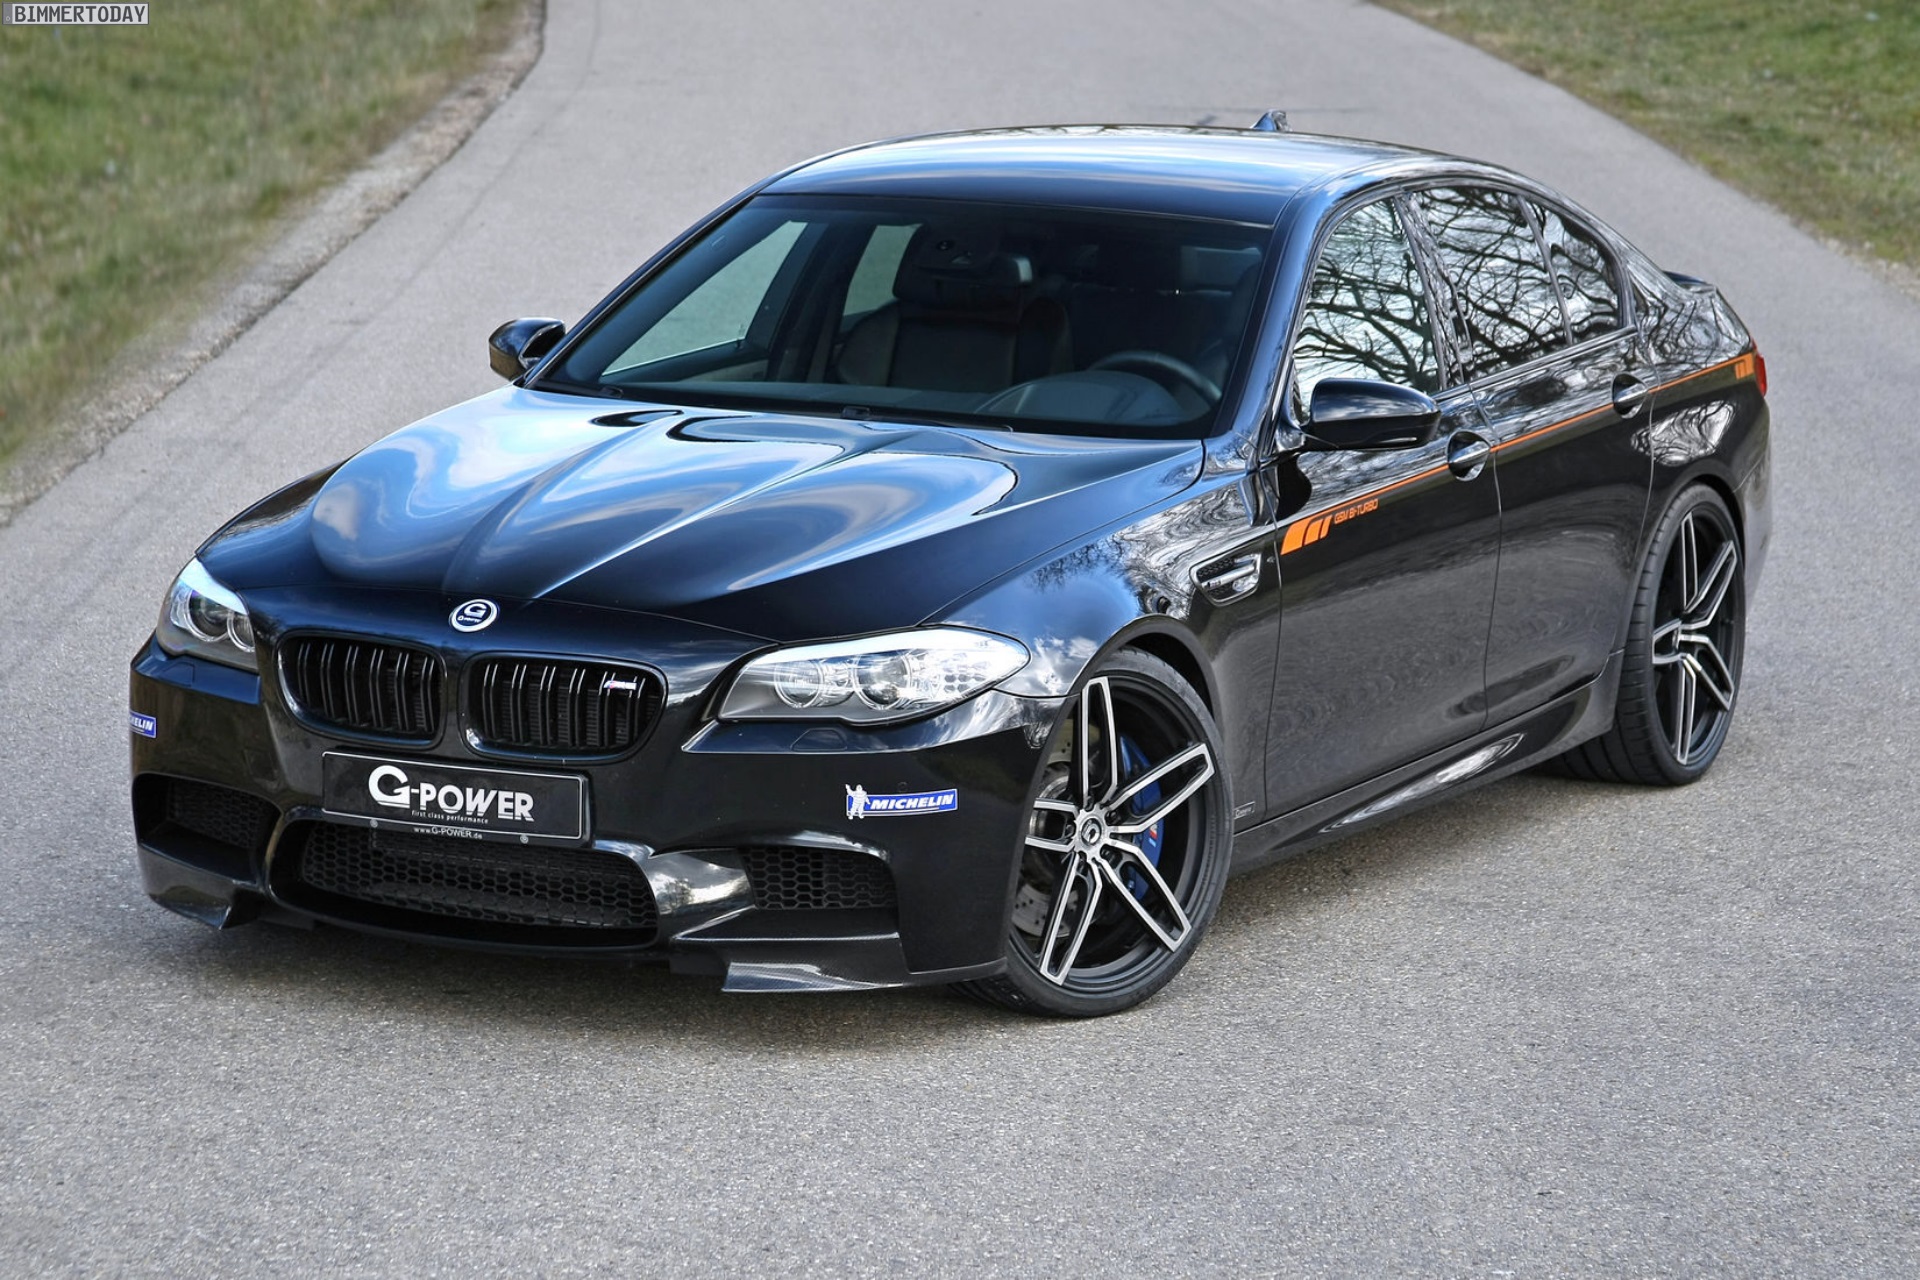 https://cdn.bimmertoday.de/wp-content/uploads/2015/03/G-Power-BMW-M5-Tuning-740-PS-F10-07.jpg